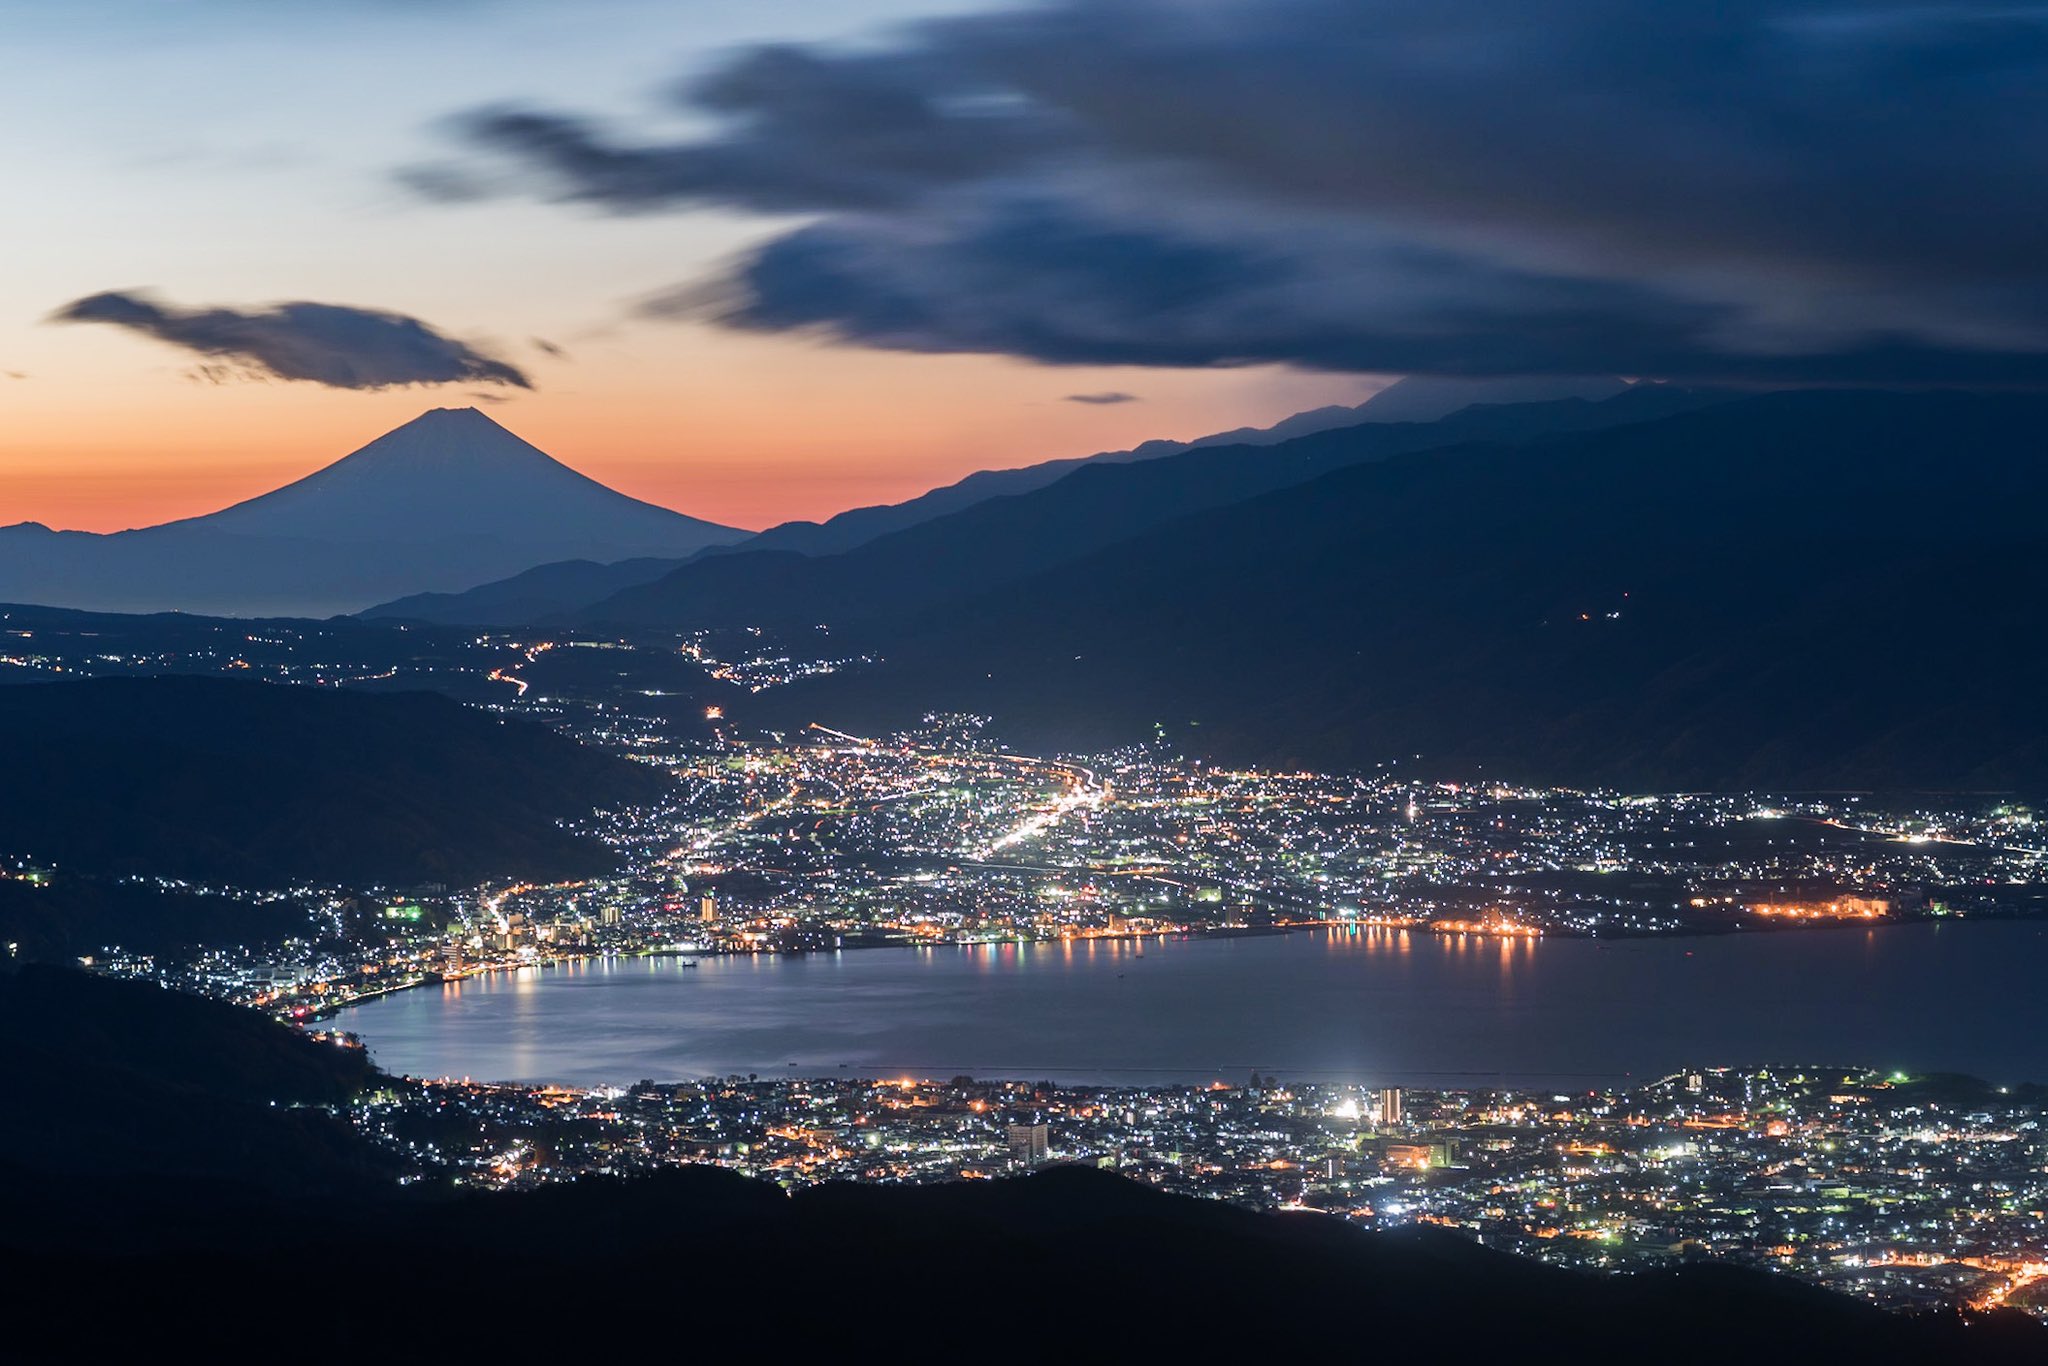 ジン 山の上から見える日本夜景 函館山 高ボッチ 摩耶山 灰ヶ峰 T Co Afrtoz8jyy Twitter